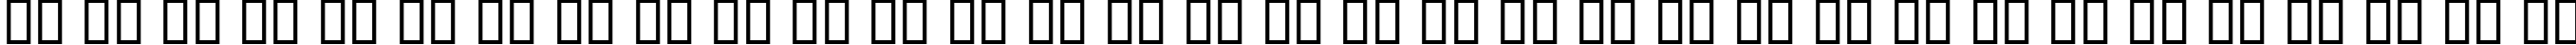 Пример написания русского алфавита шрифтом KacstQurn